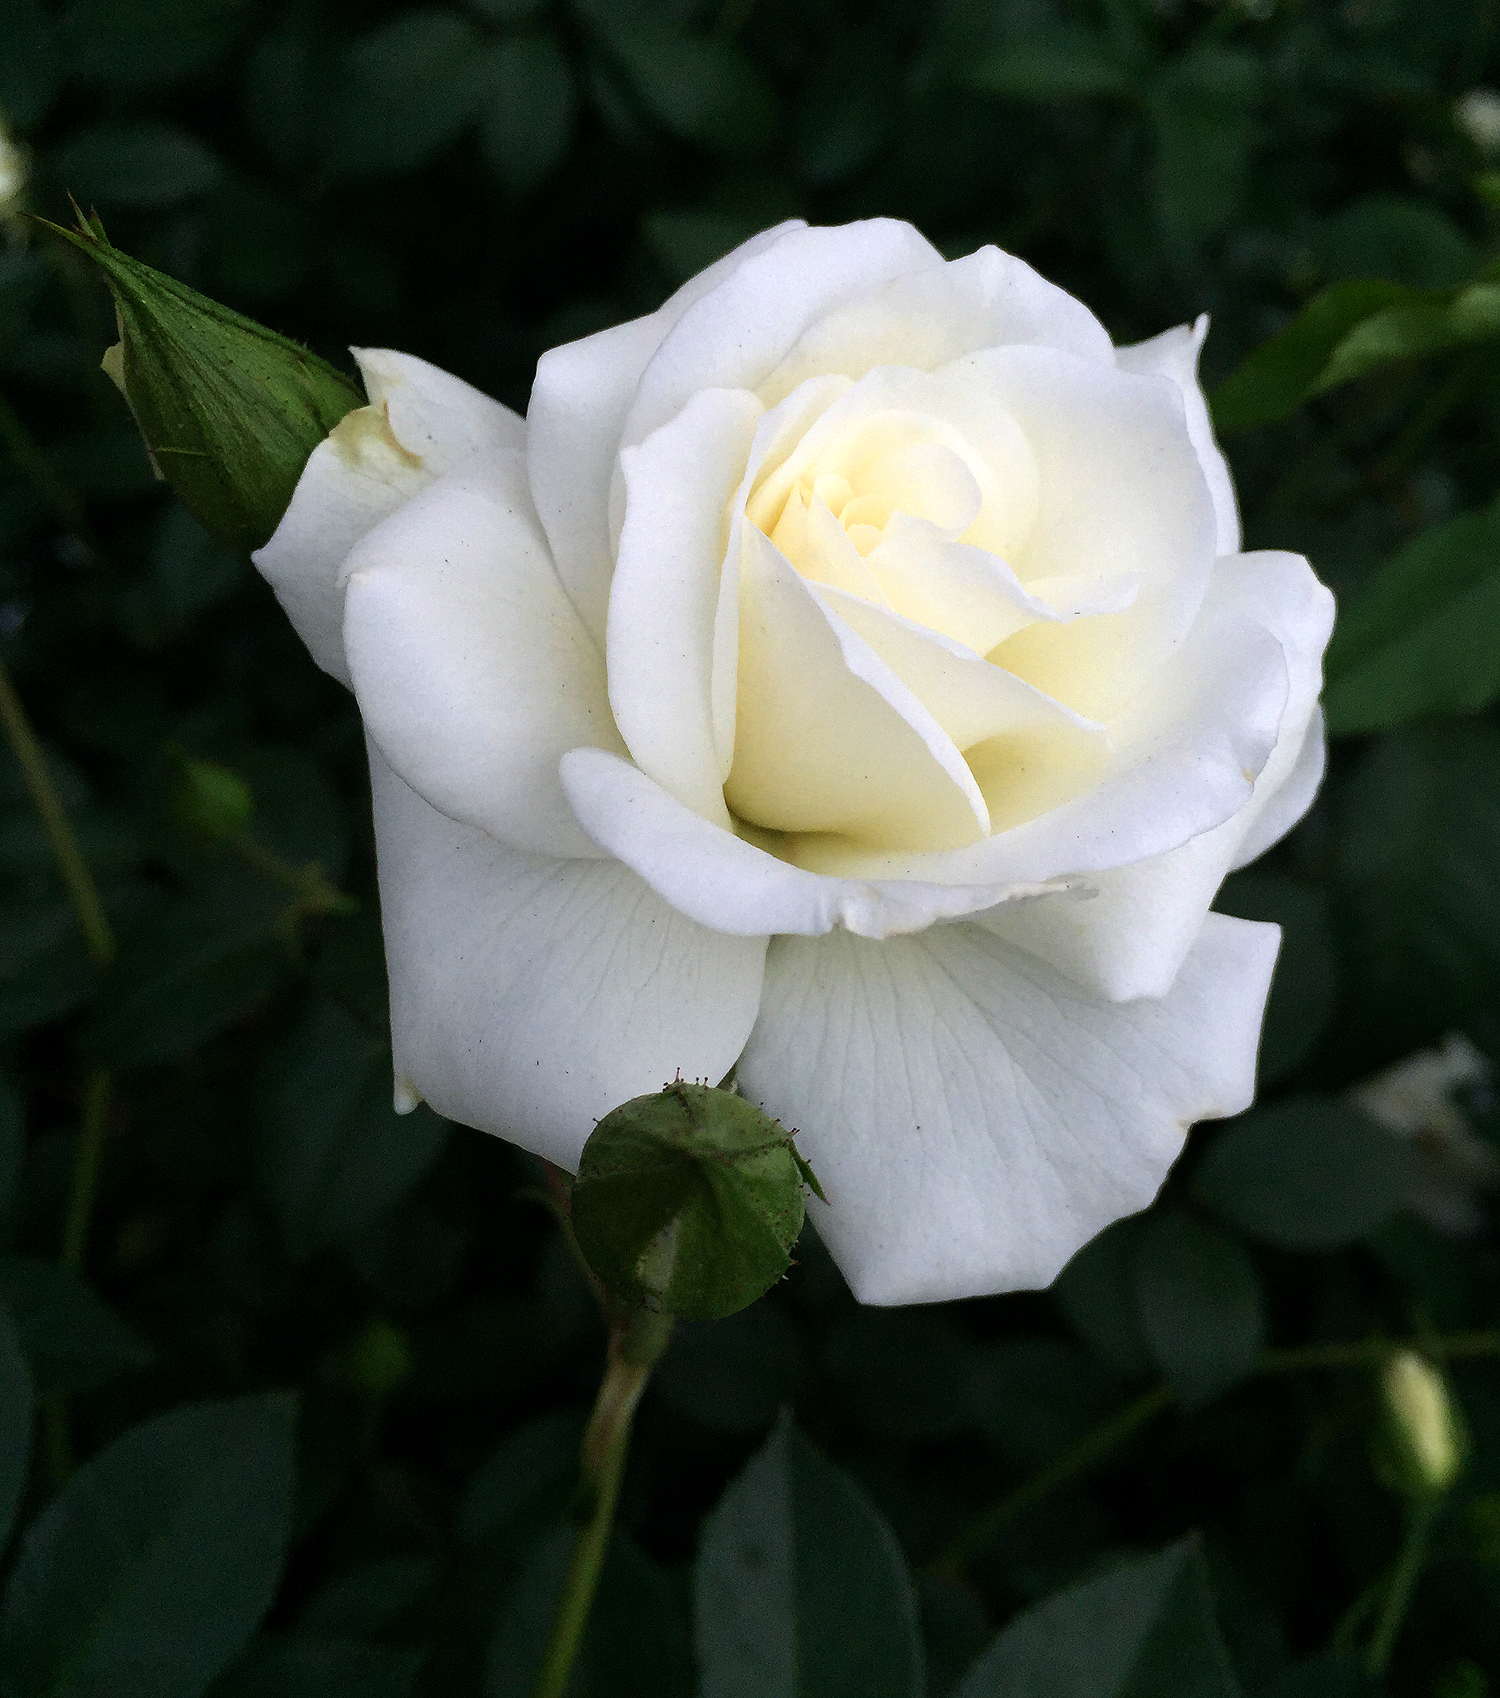 Đóa hoa hồng trắng giữa tán lá xanh